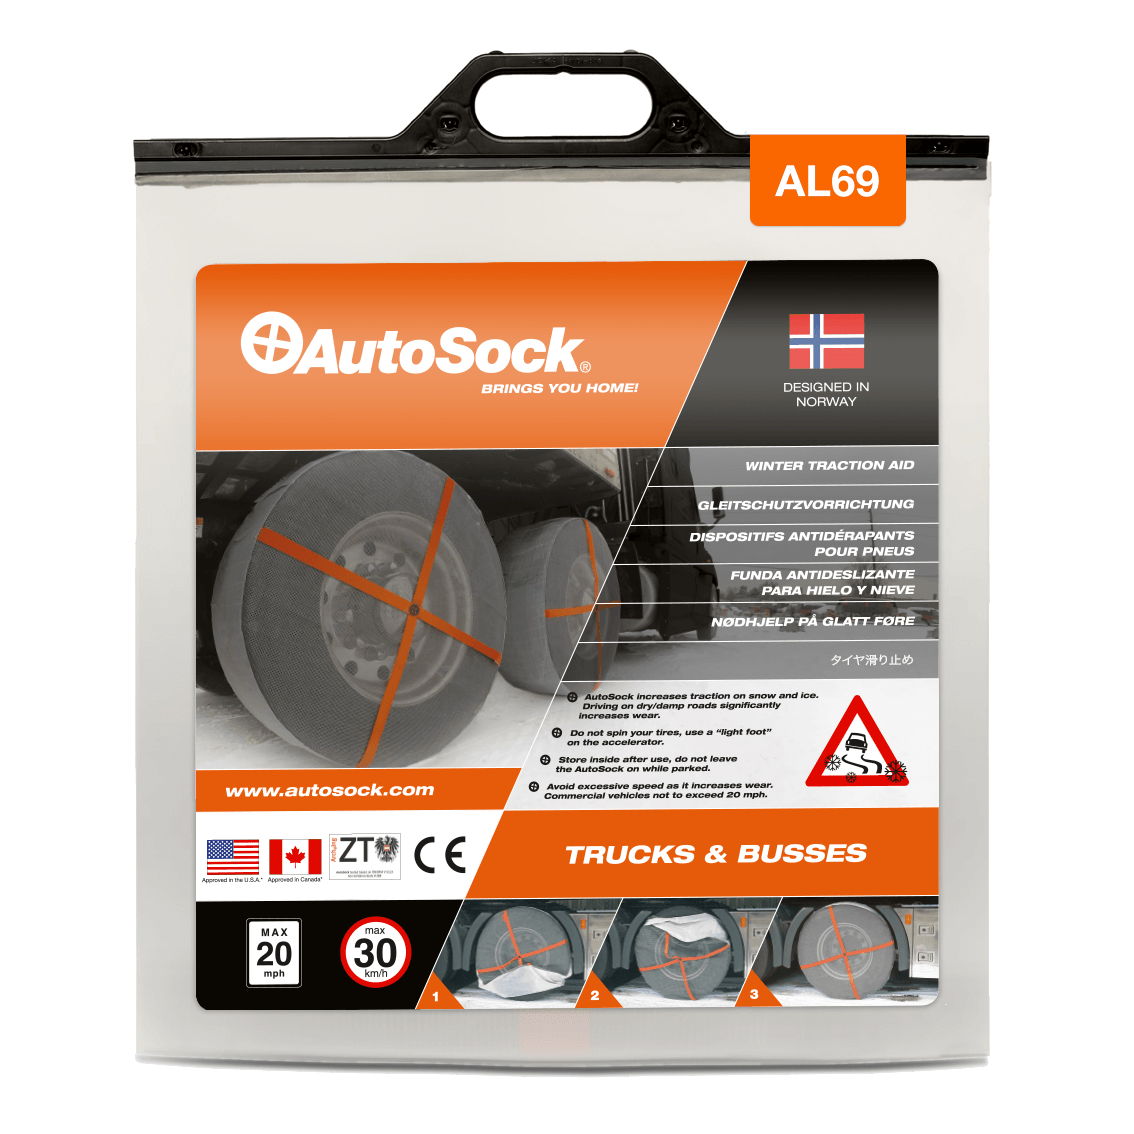 Emballage du produit AutoSock AL 69 AL69 pour camions (vue de face)